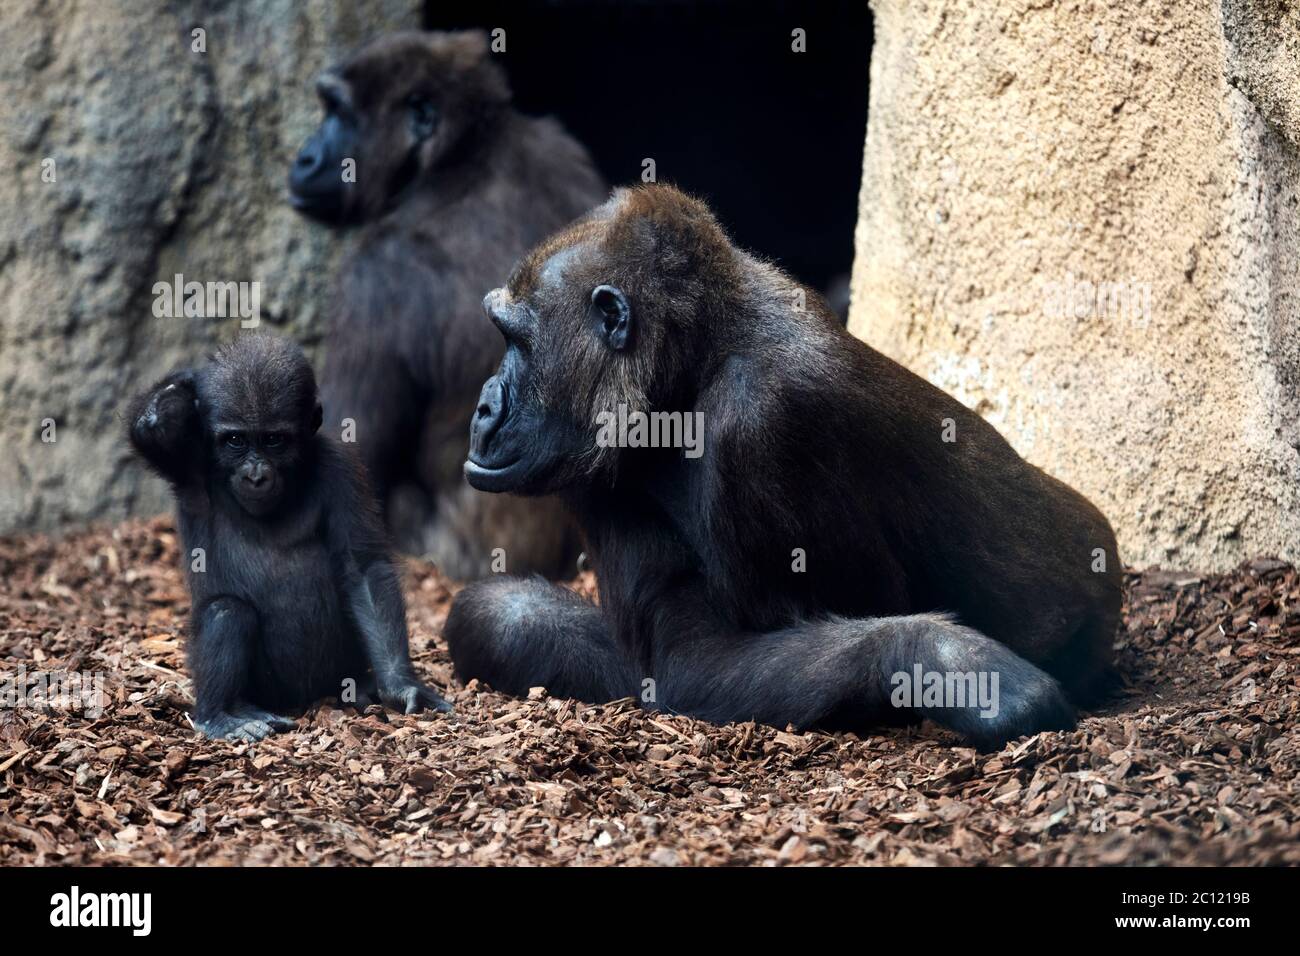 Gorila occidental femenina con bebé, Bioparc, Valencia, España. Foto de stock